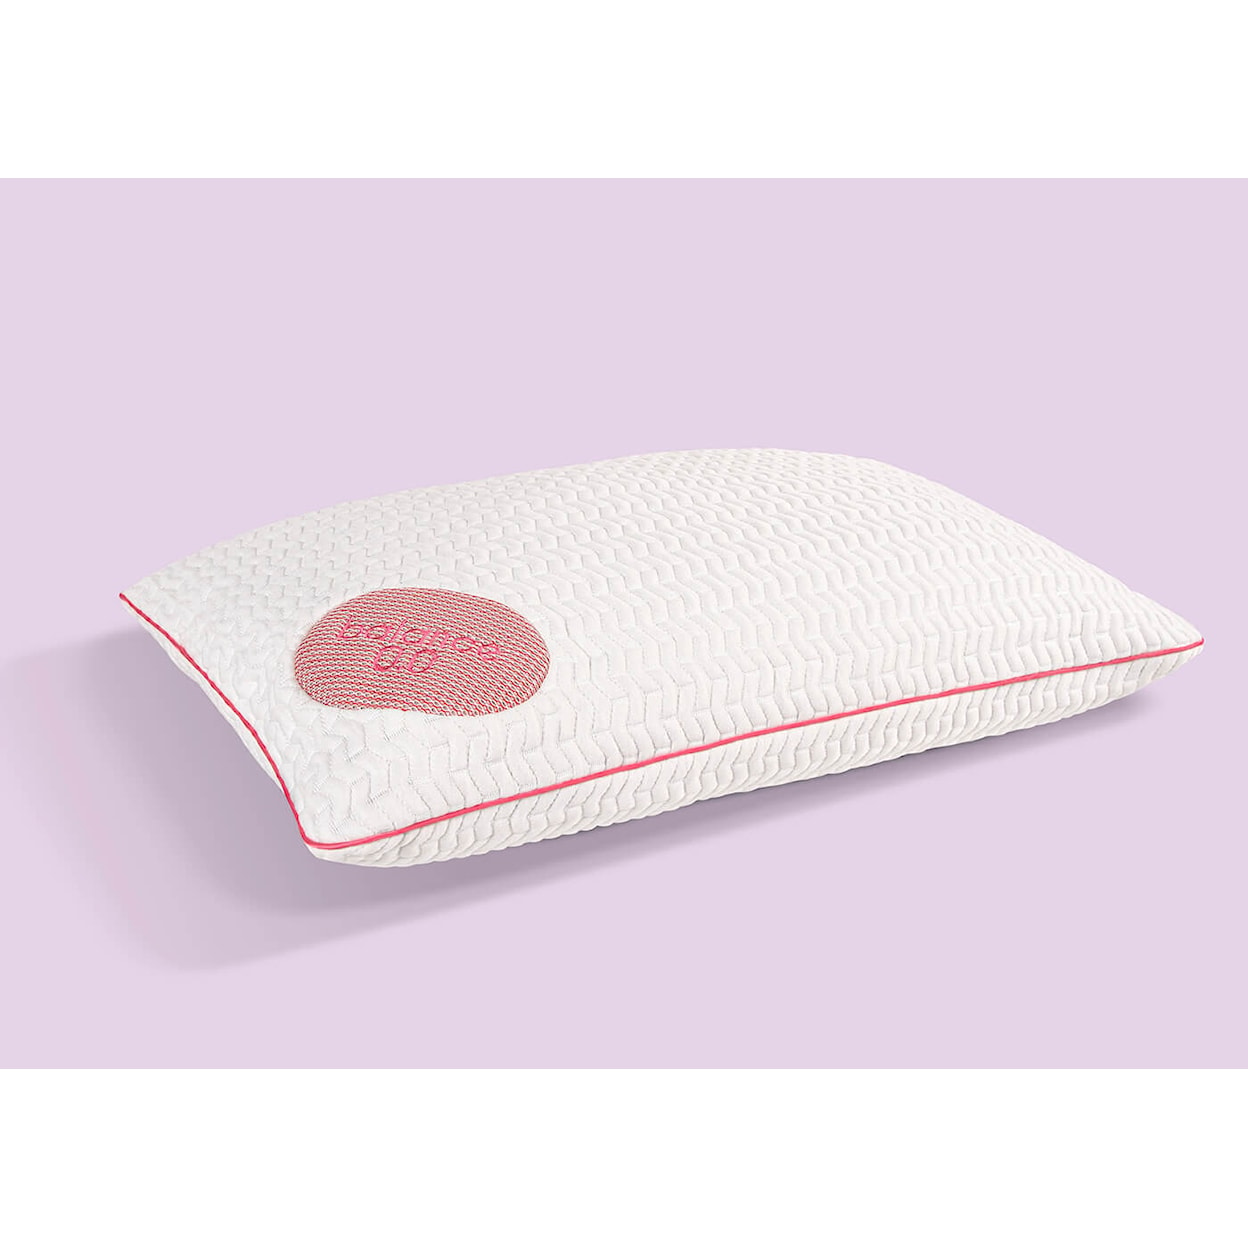 Bedgear Balance Balance Performance Pillow 0.0